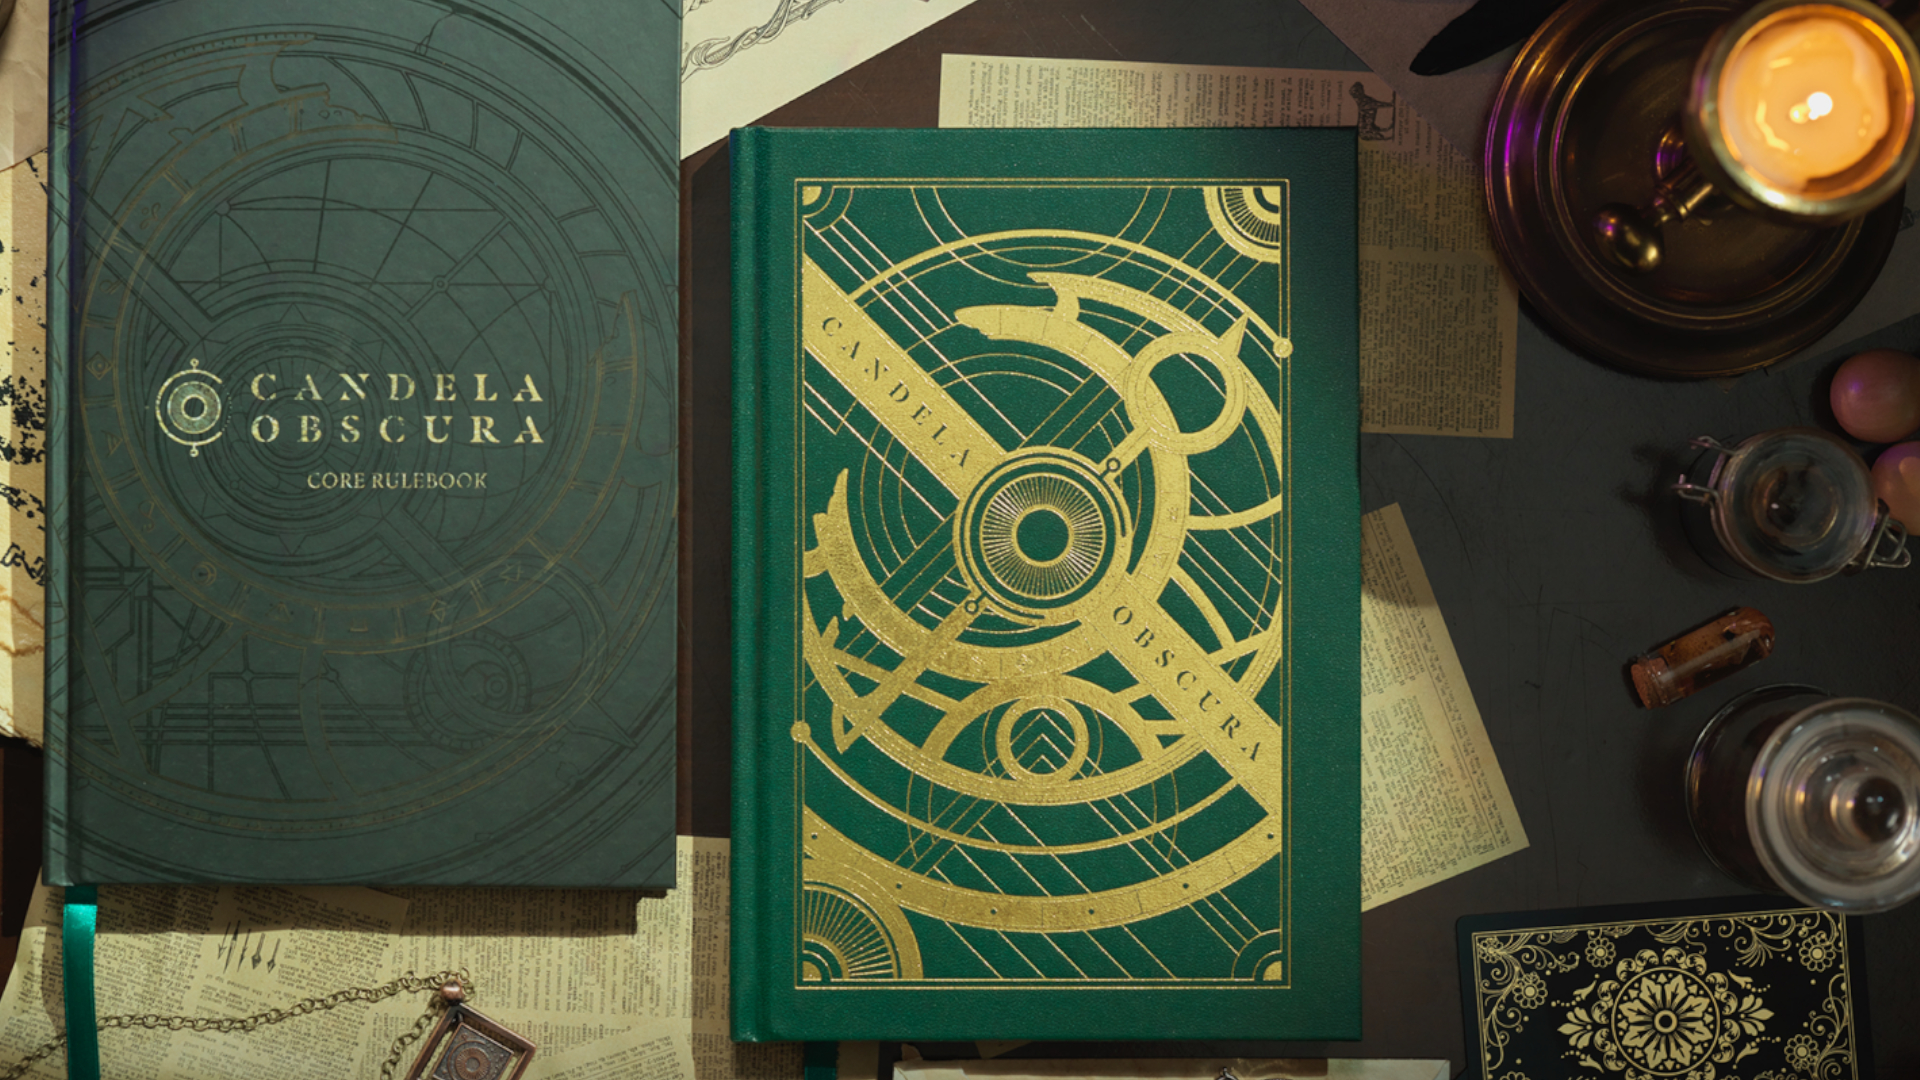 Twee exemplaren van het Candela Obscura regelboek op een bureau bezaaid met esoterische voorwerpen en een kaars